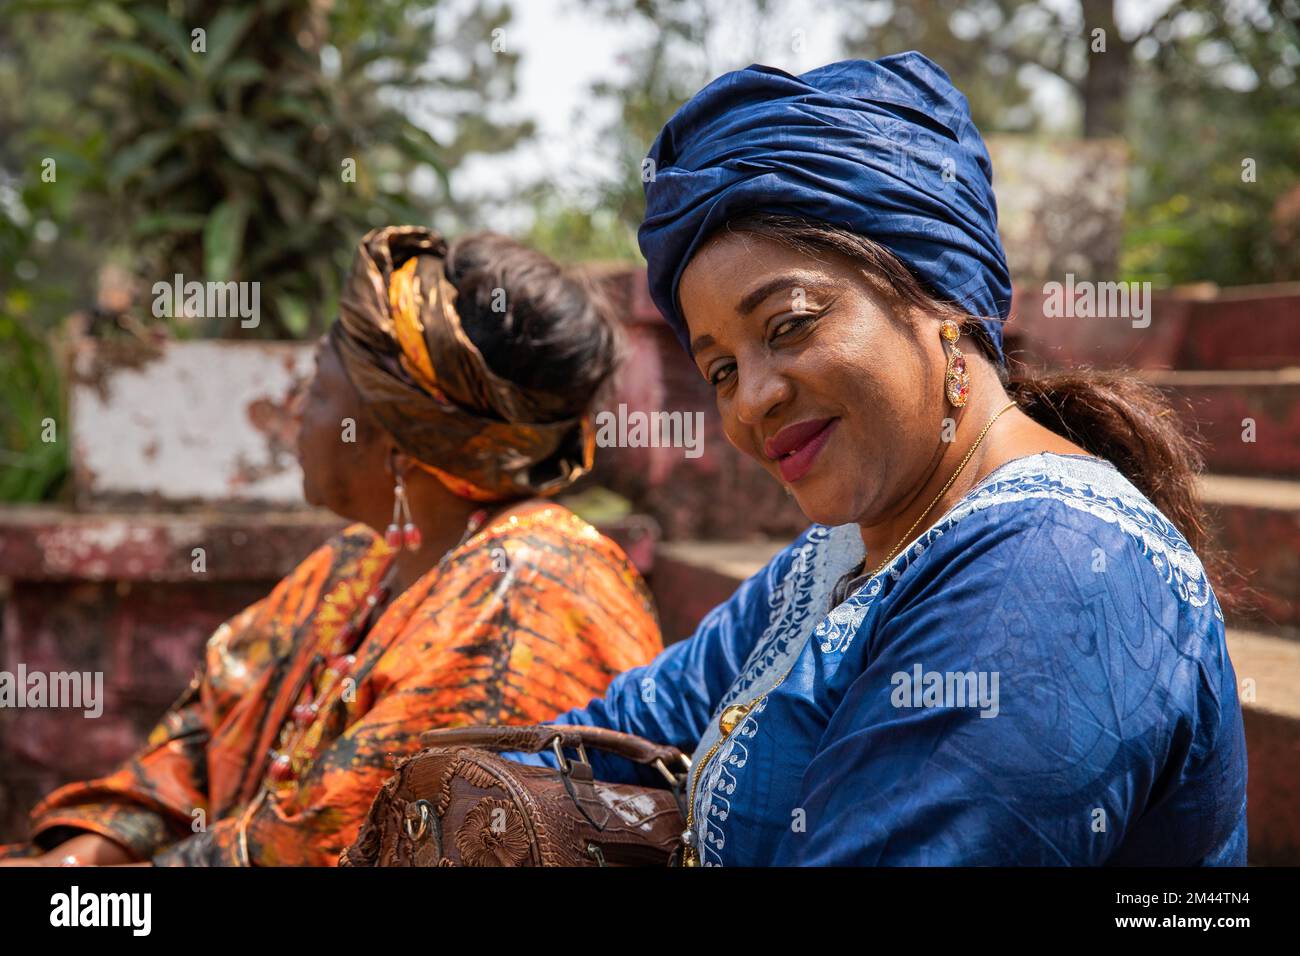 Ritratto di una donna africana sorridente vestita con abiti tradizionali accanto ad un amico Foto Stock